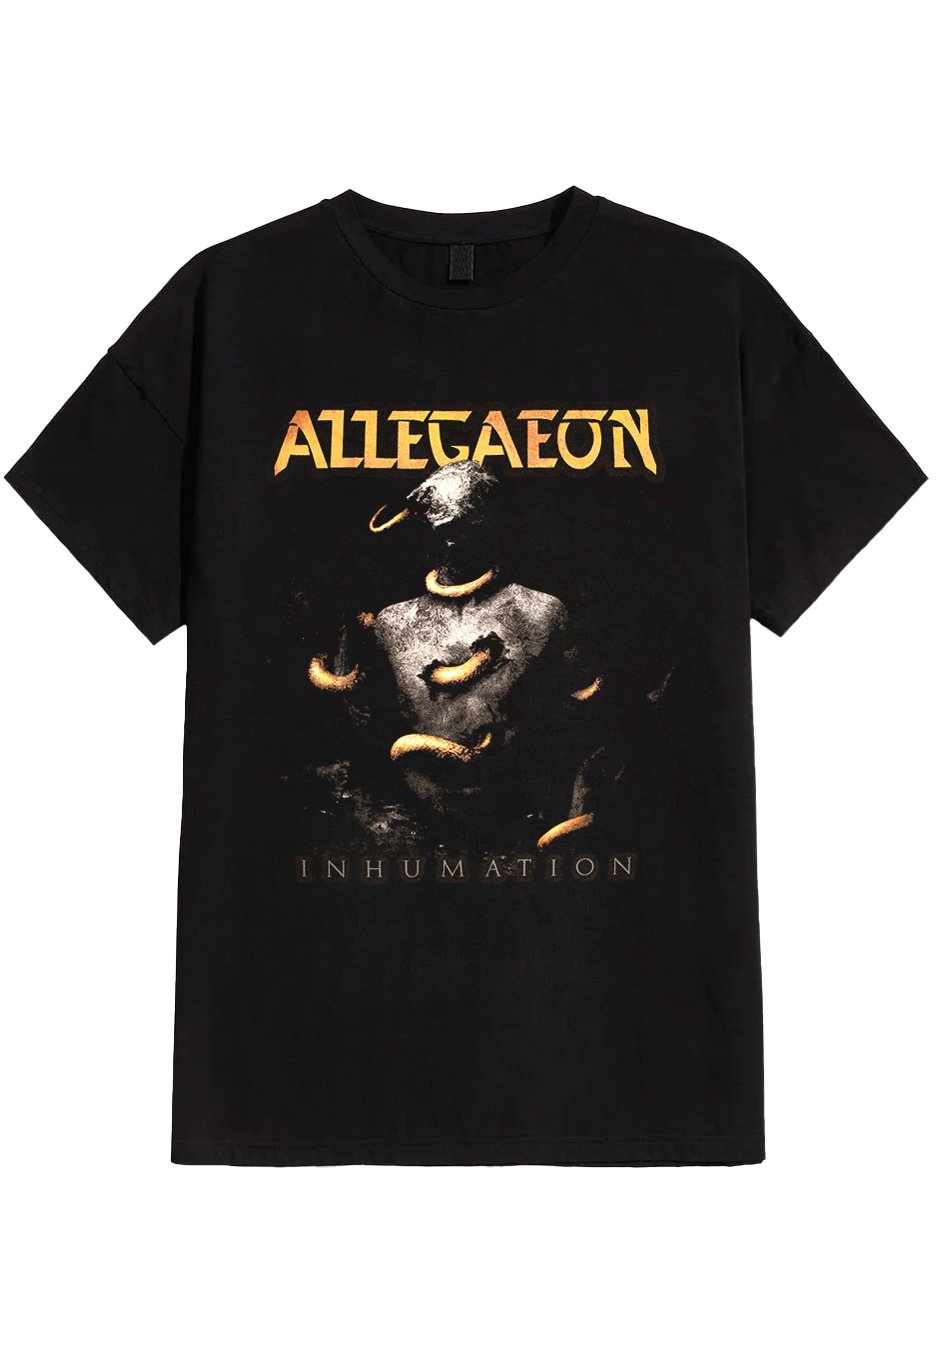 Allegaeon - Inhumation - T-Shirt